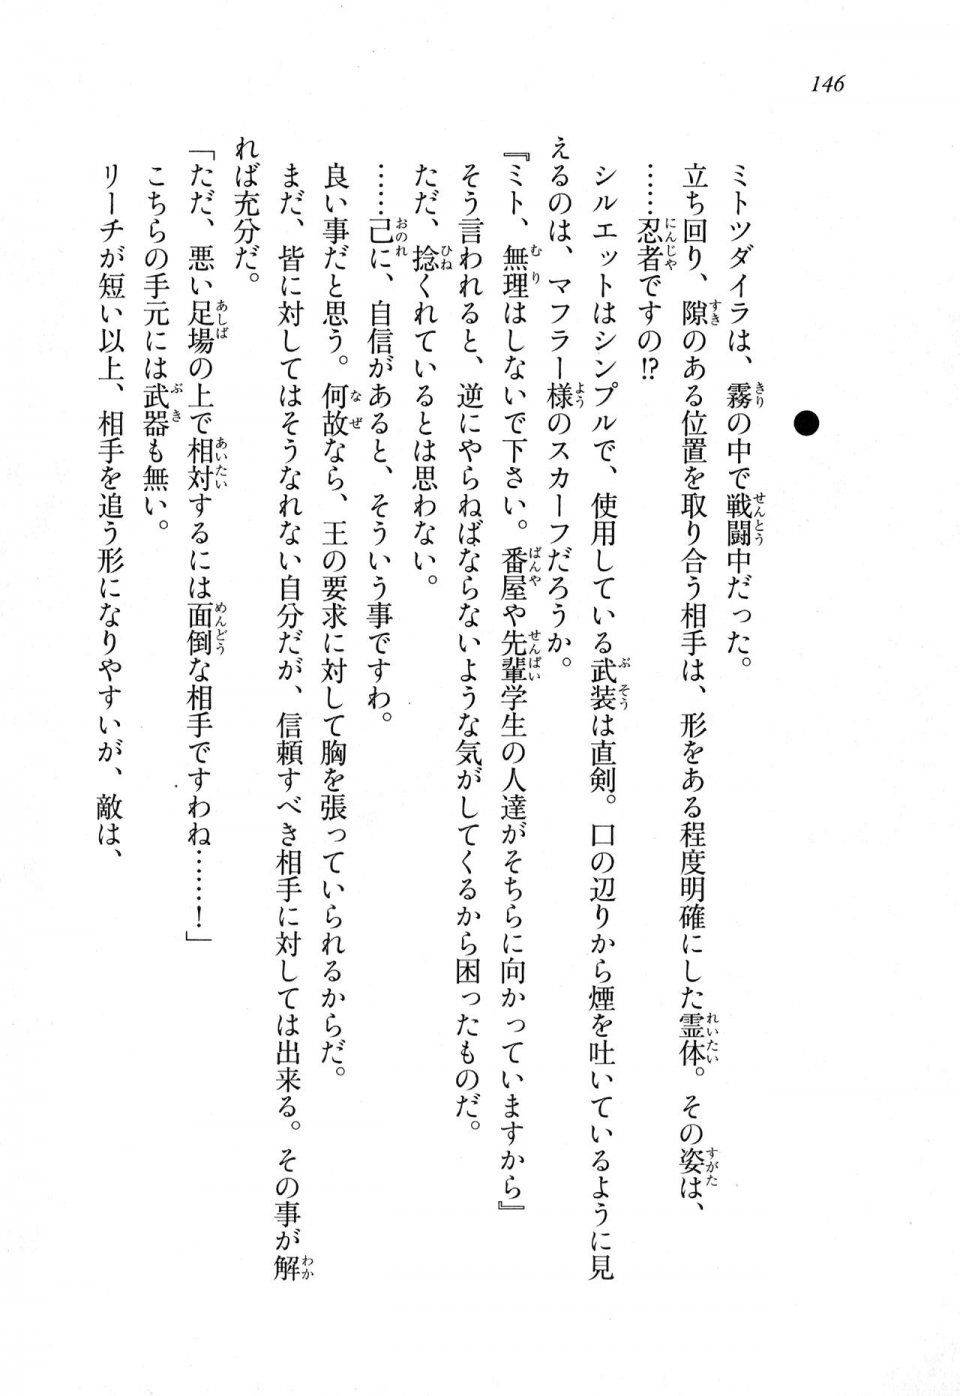 Kyoukai Senjou no Horizon LN Sidestory Vol 1 - Photo #144